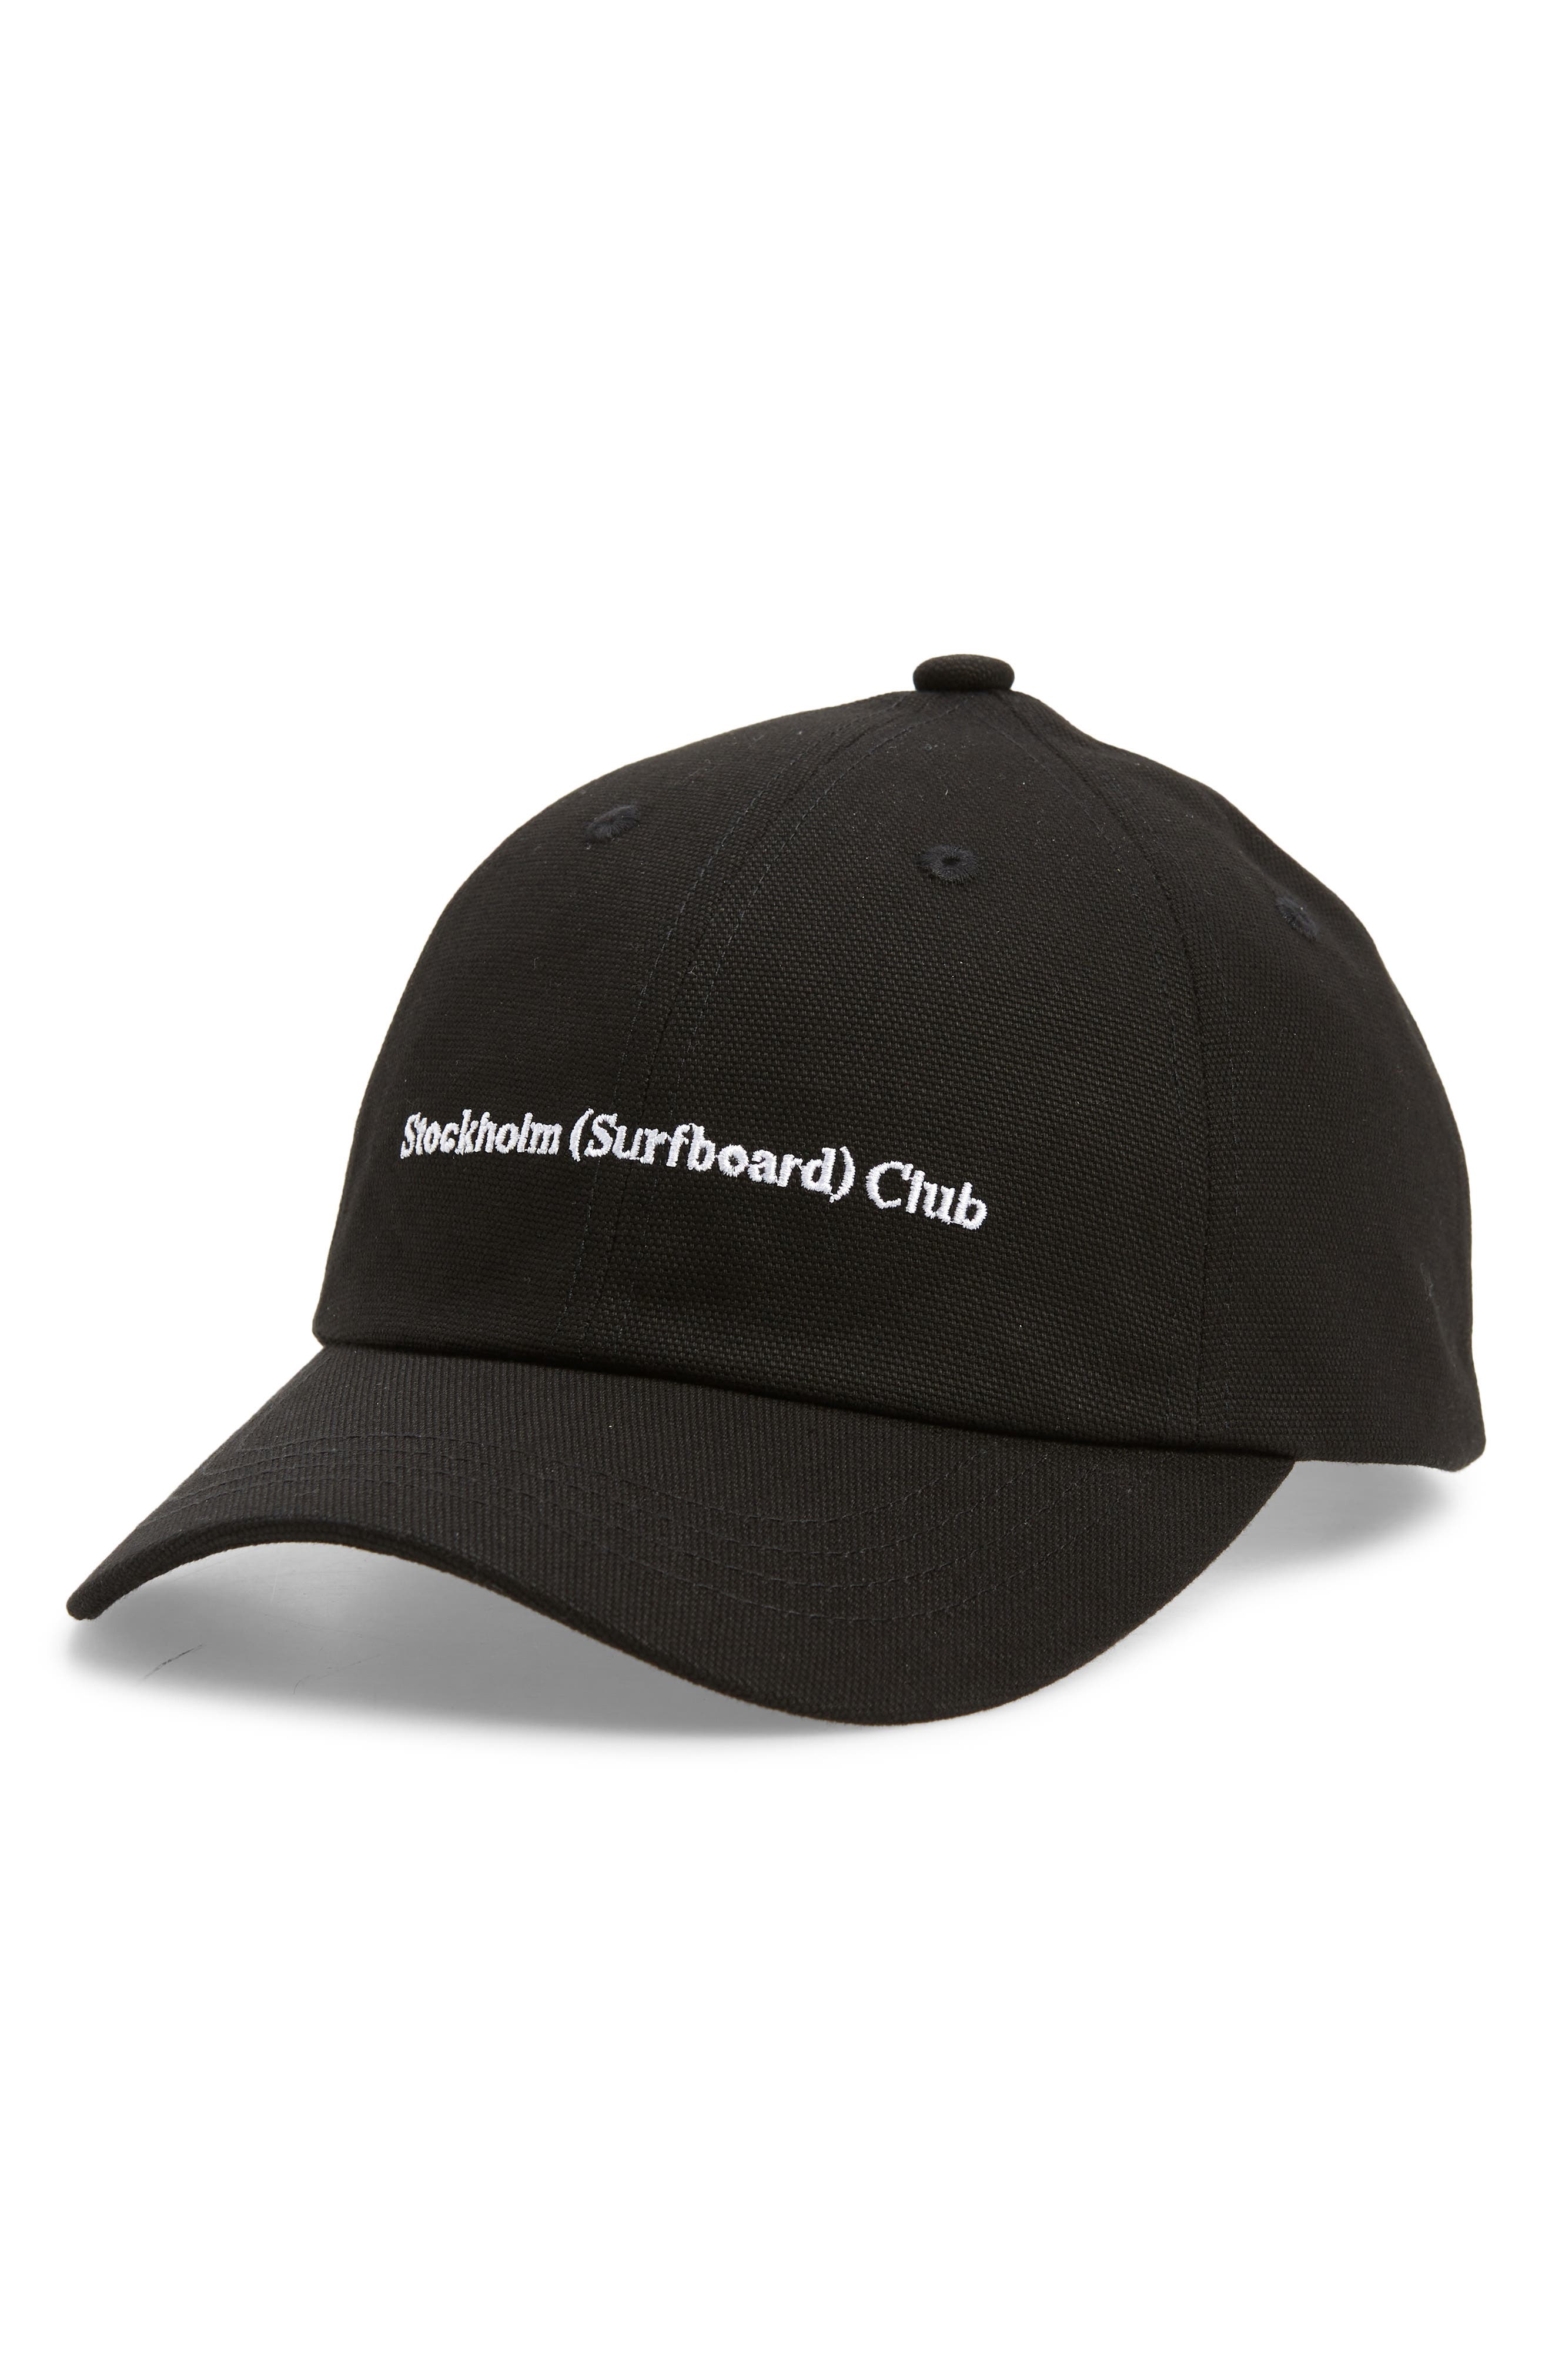 超特価即納stockholm surfboard club キャップ　ブラック 帽子